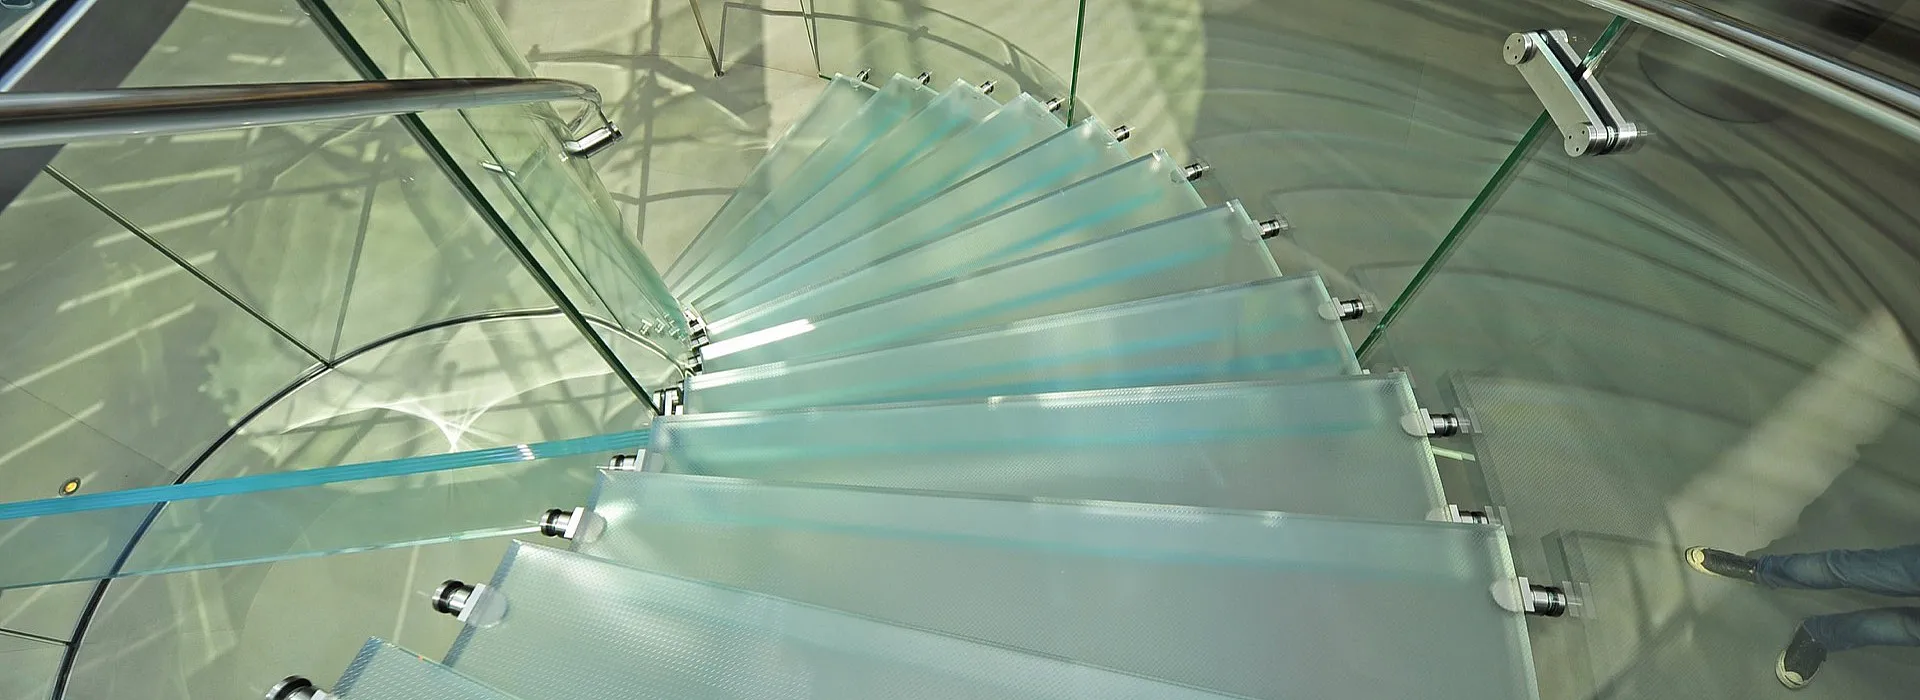 Treppe mit Glasstufen, Glasgeländer und Metallhandlauf